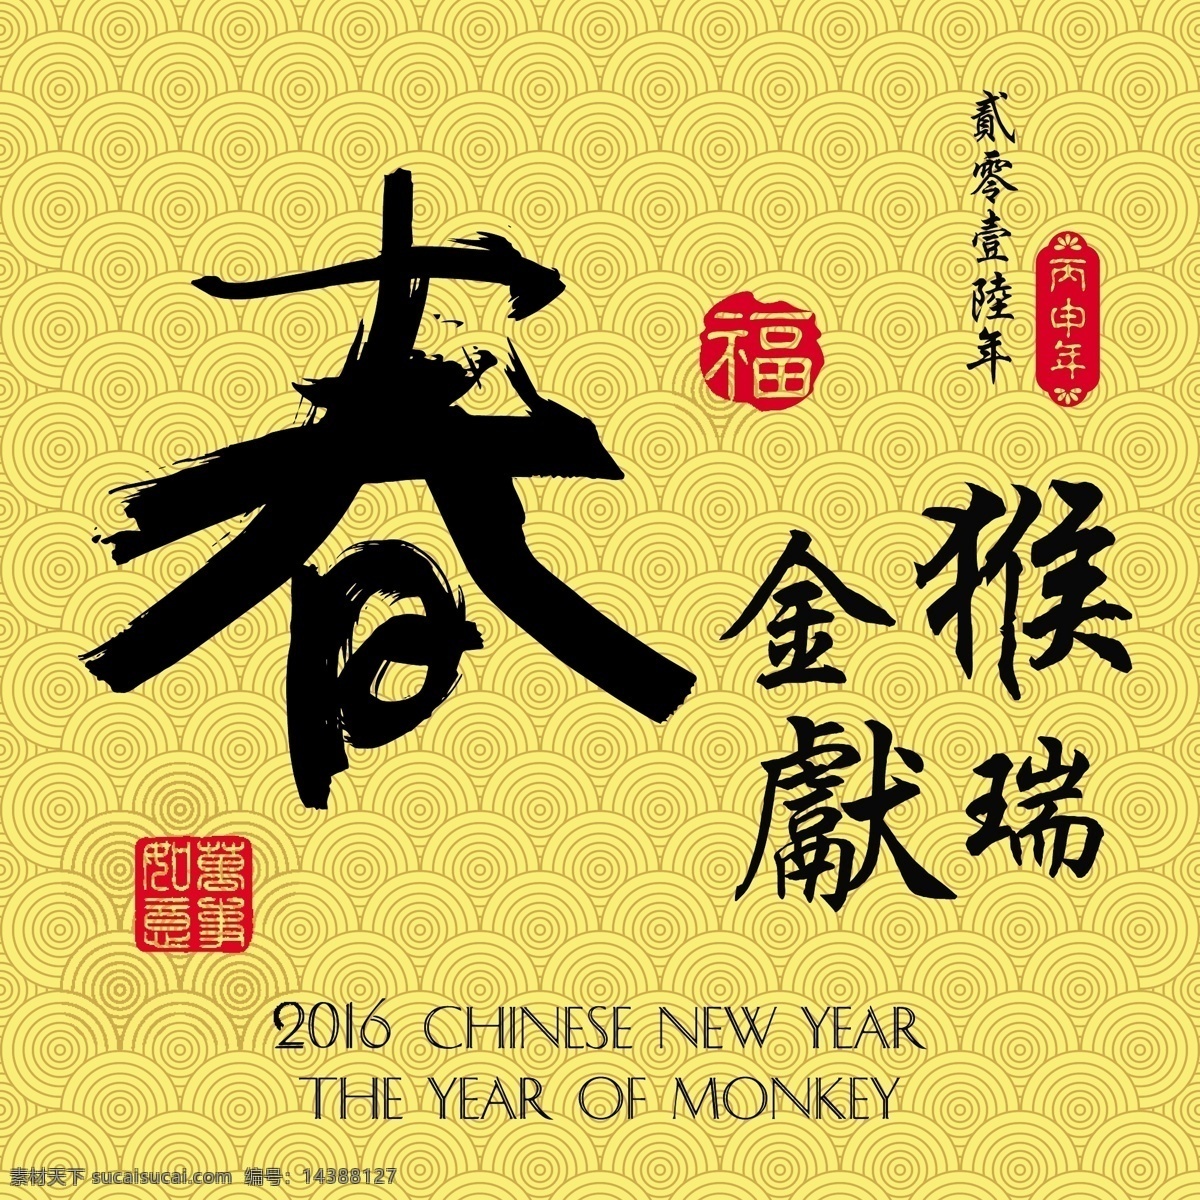 中国 传统 春节 新年 猴年 矢量 设计素材 过年 福 简约 卡通 平面素材